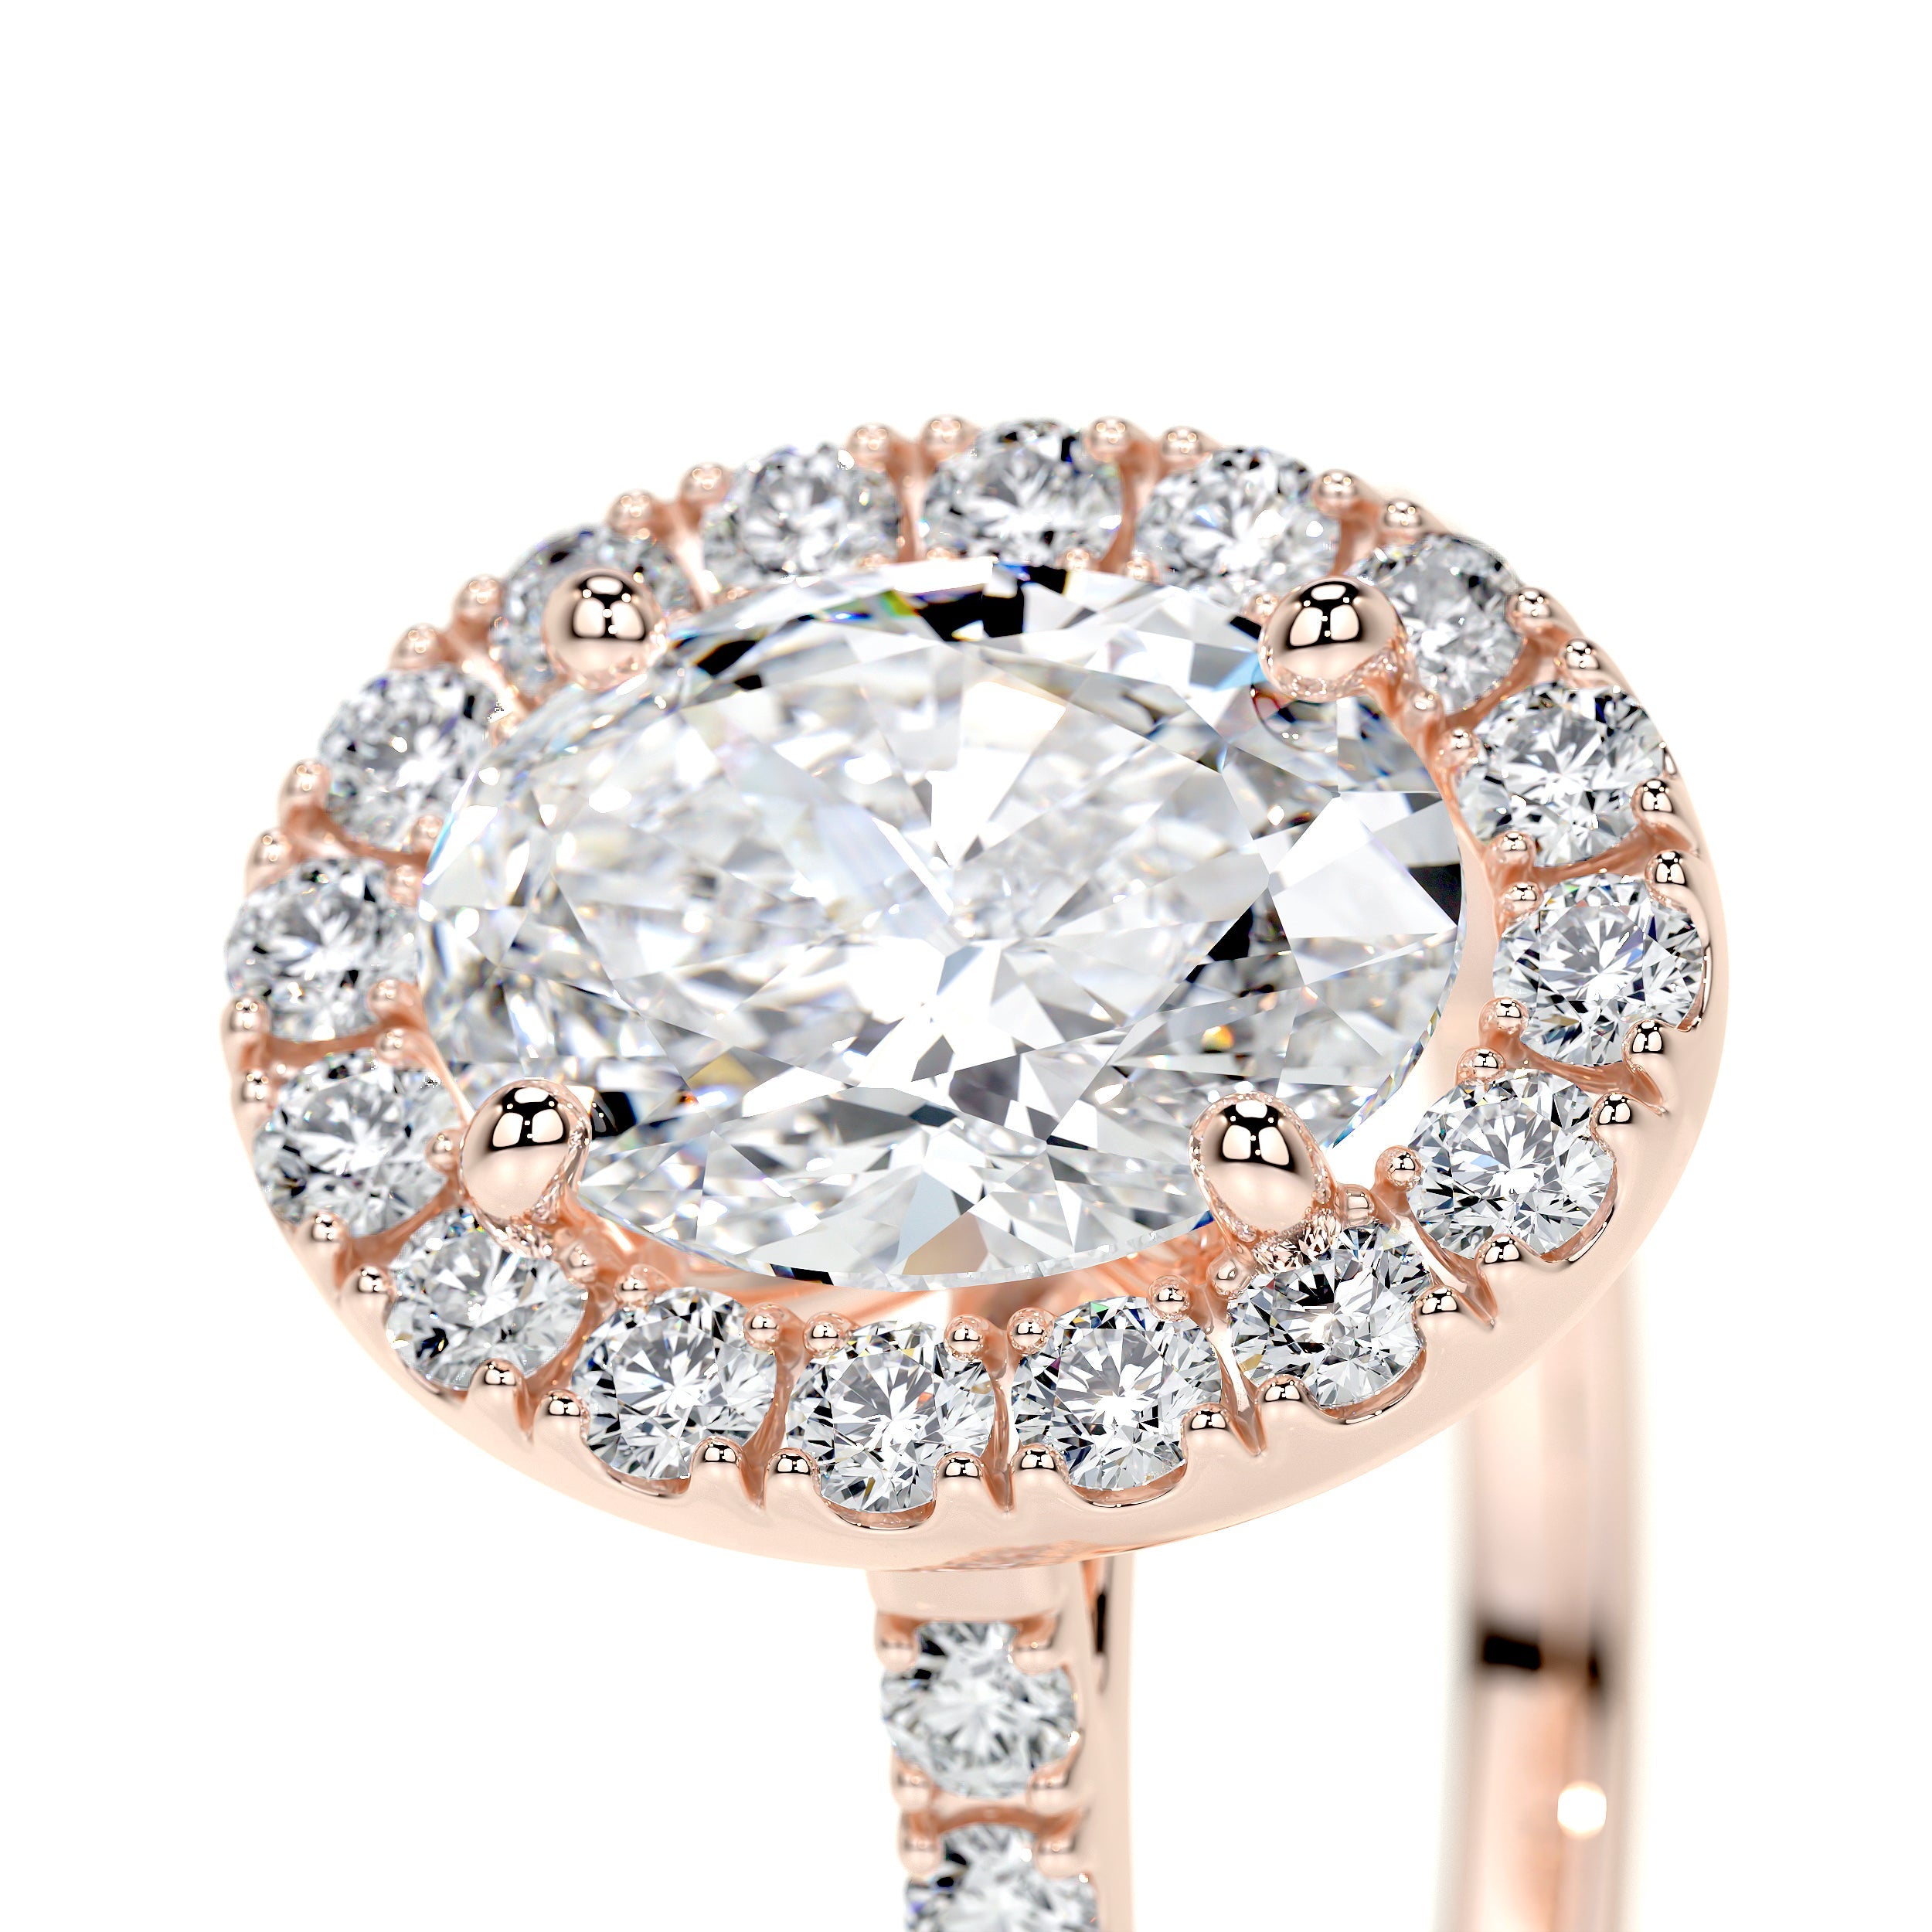 Maria Lab Grown Diamond Ring   (1.3 Carat) - 14K Rose Gold